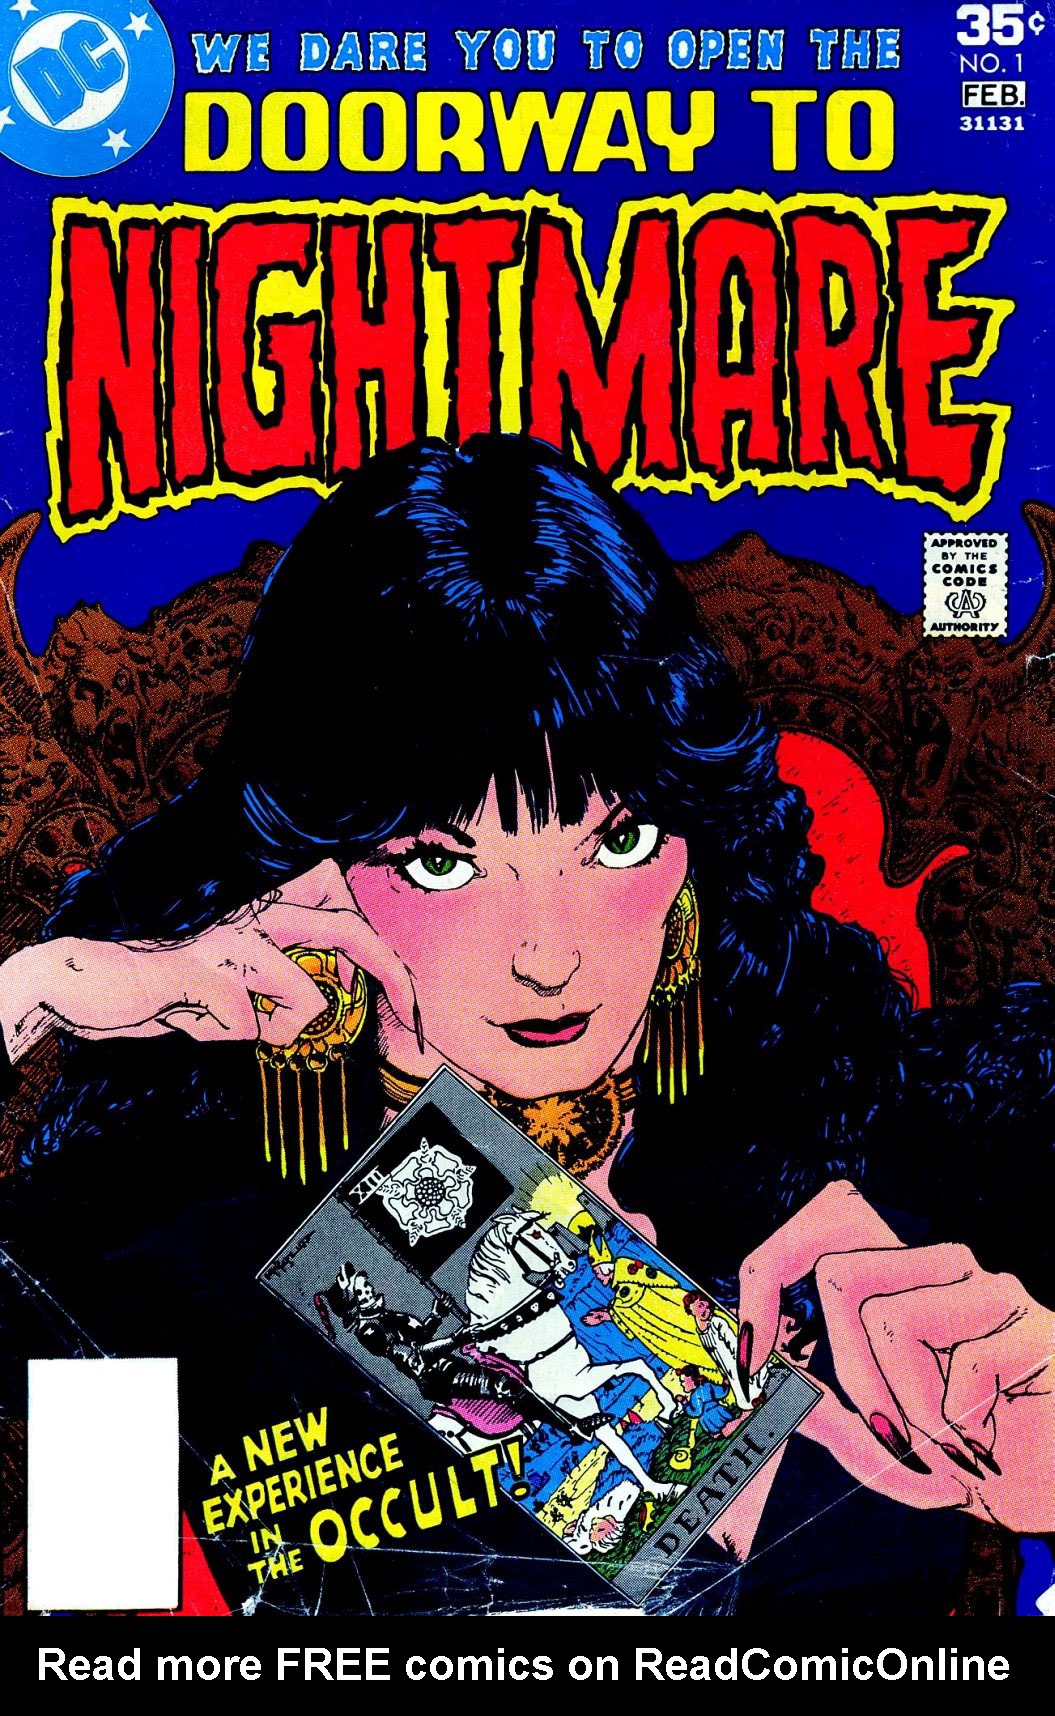 Read online Doorway to Nightmare comic -  Issue #1 - 1